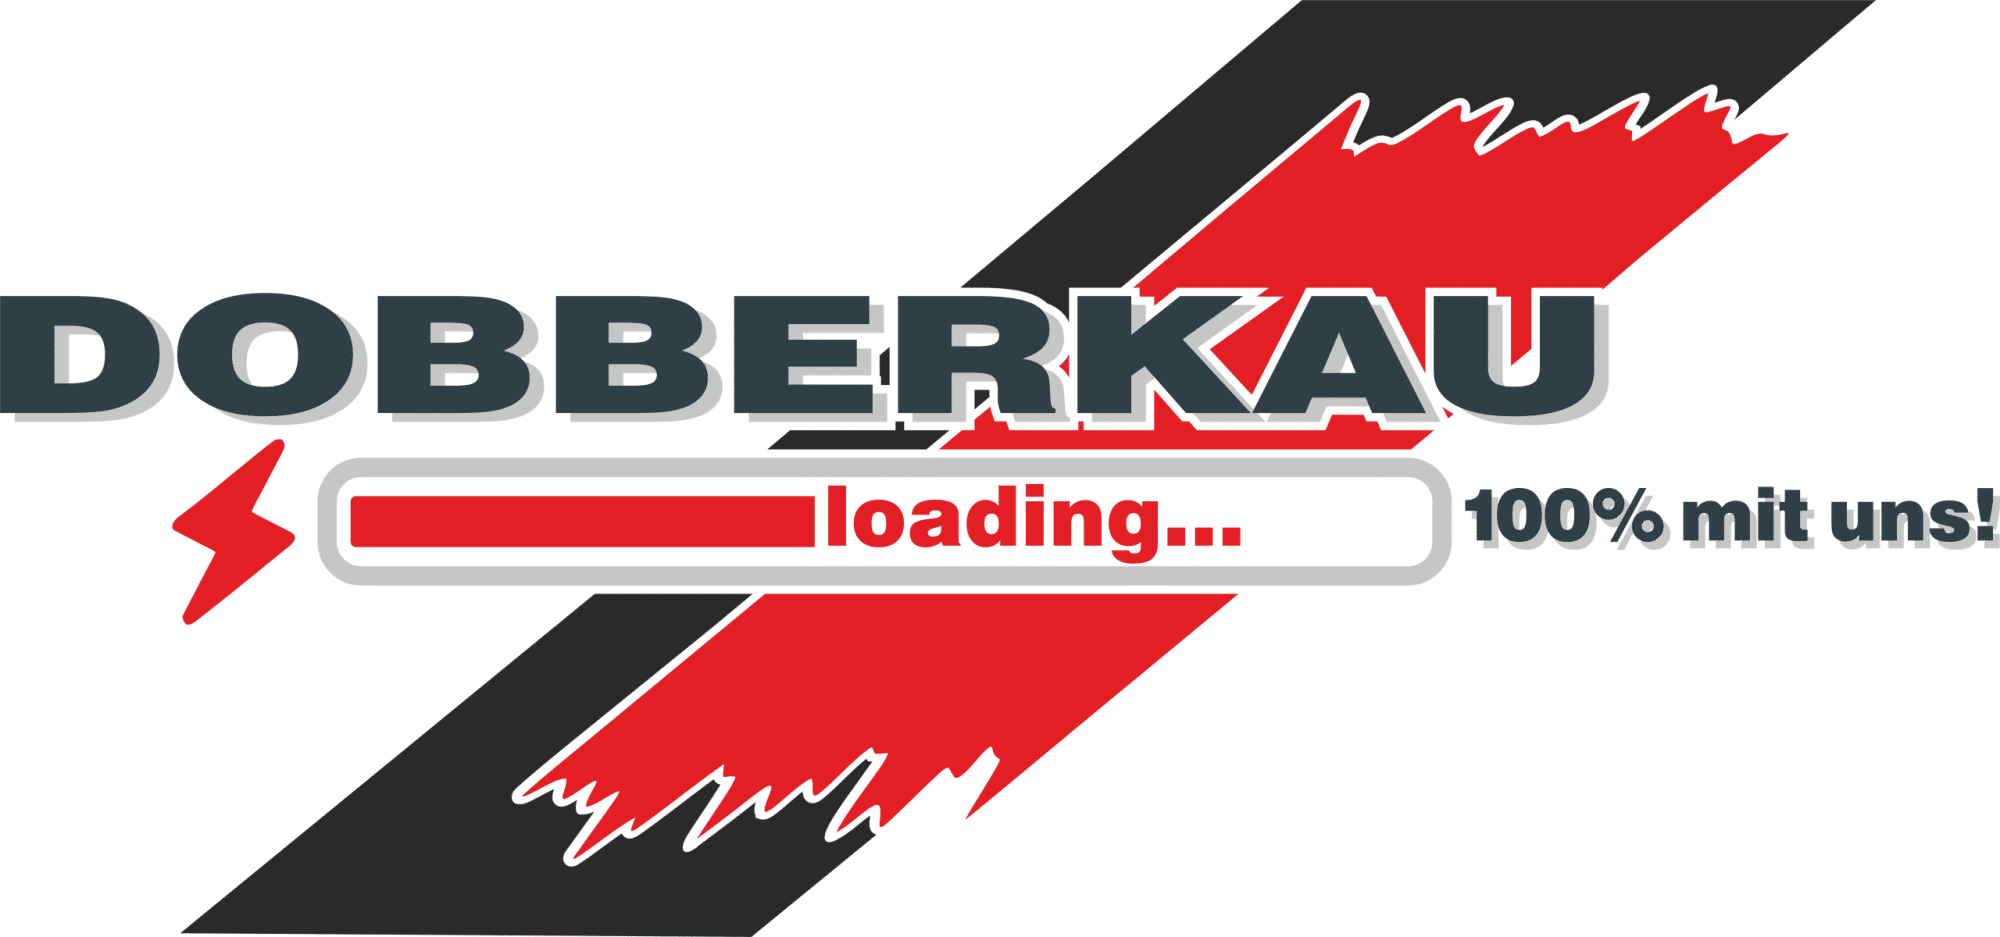 Logo Dobberkau